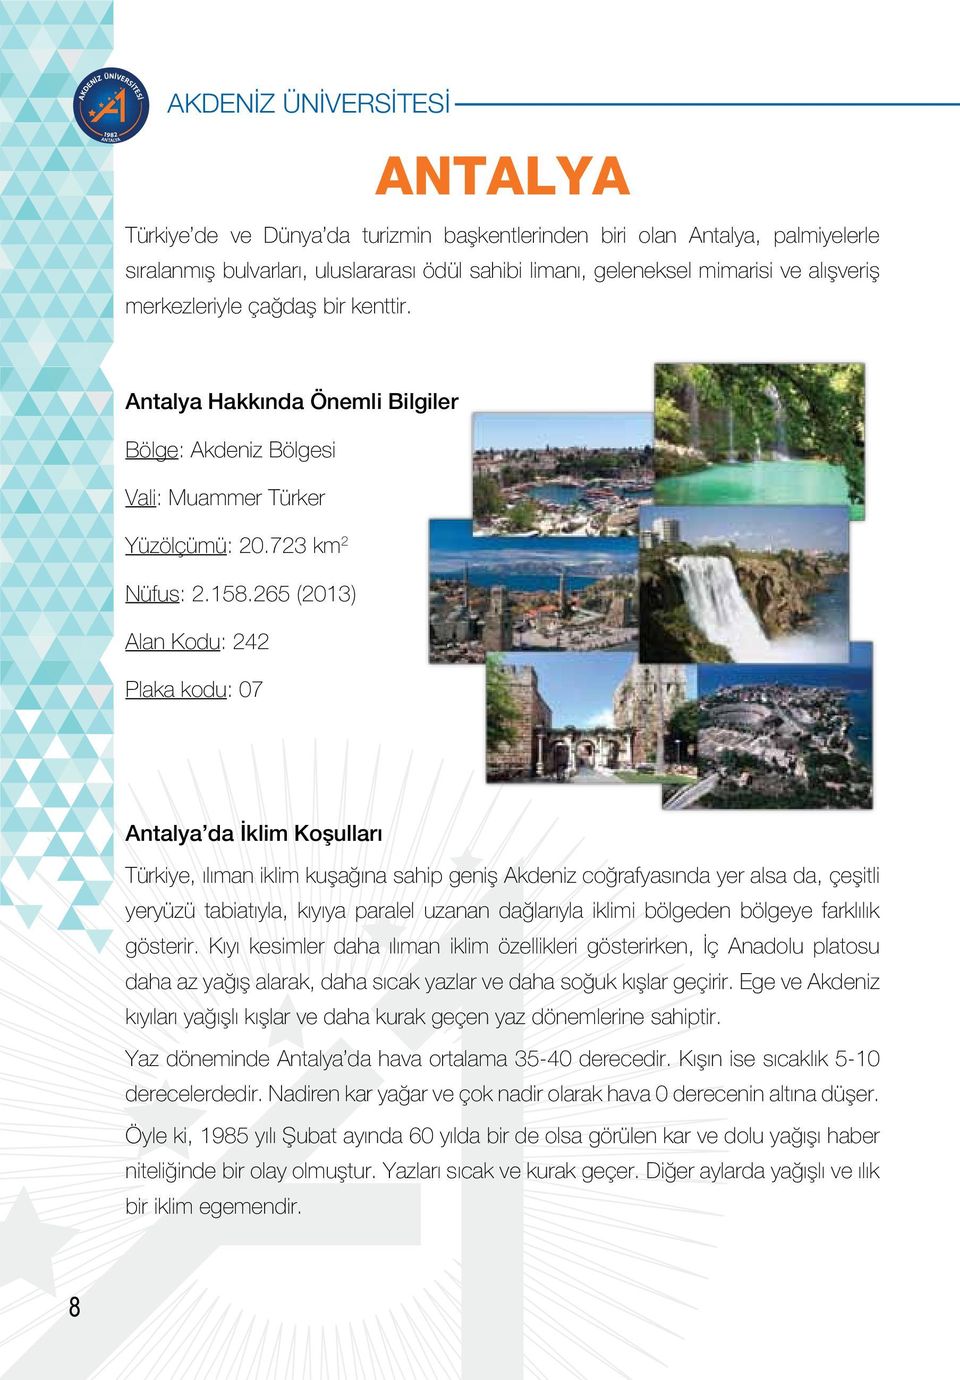 265 (2013) Alan Kodu: 242 Plaka kodu: 07 Antalya da İklim Koşulları Türkiye, ılıman iklim kuşağına sahip geniş Akdeniz coğrafyasında yer alsa da, çeşitli yeryüzü tabiatıyla, kıyıya paralel uzanan